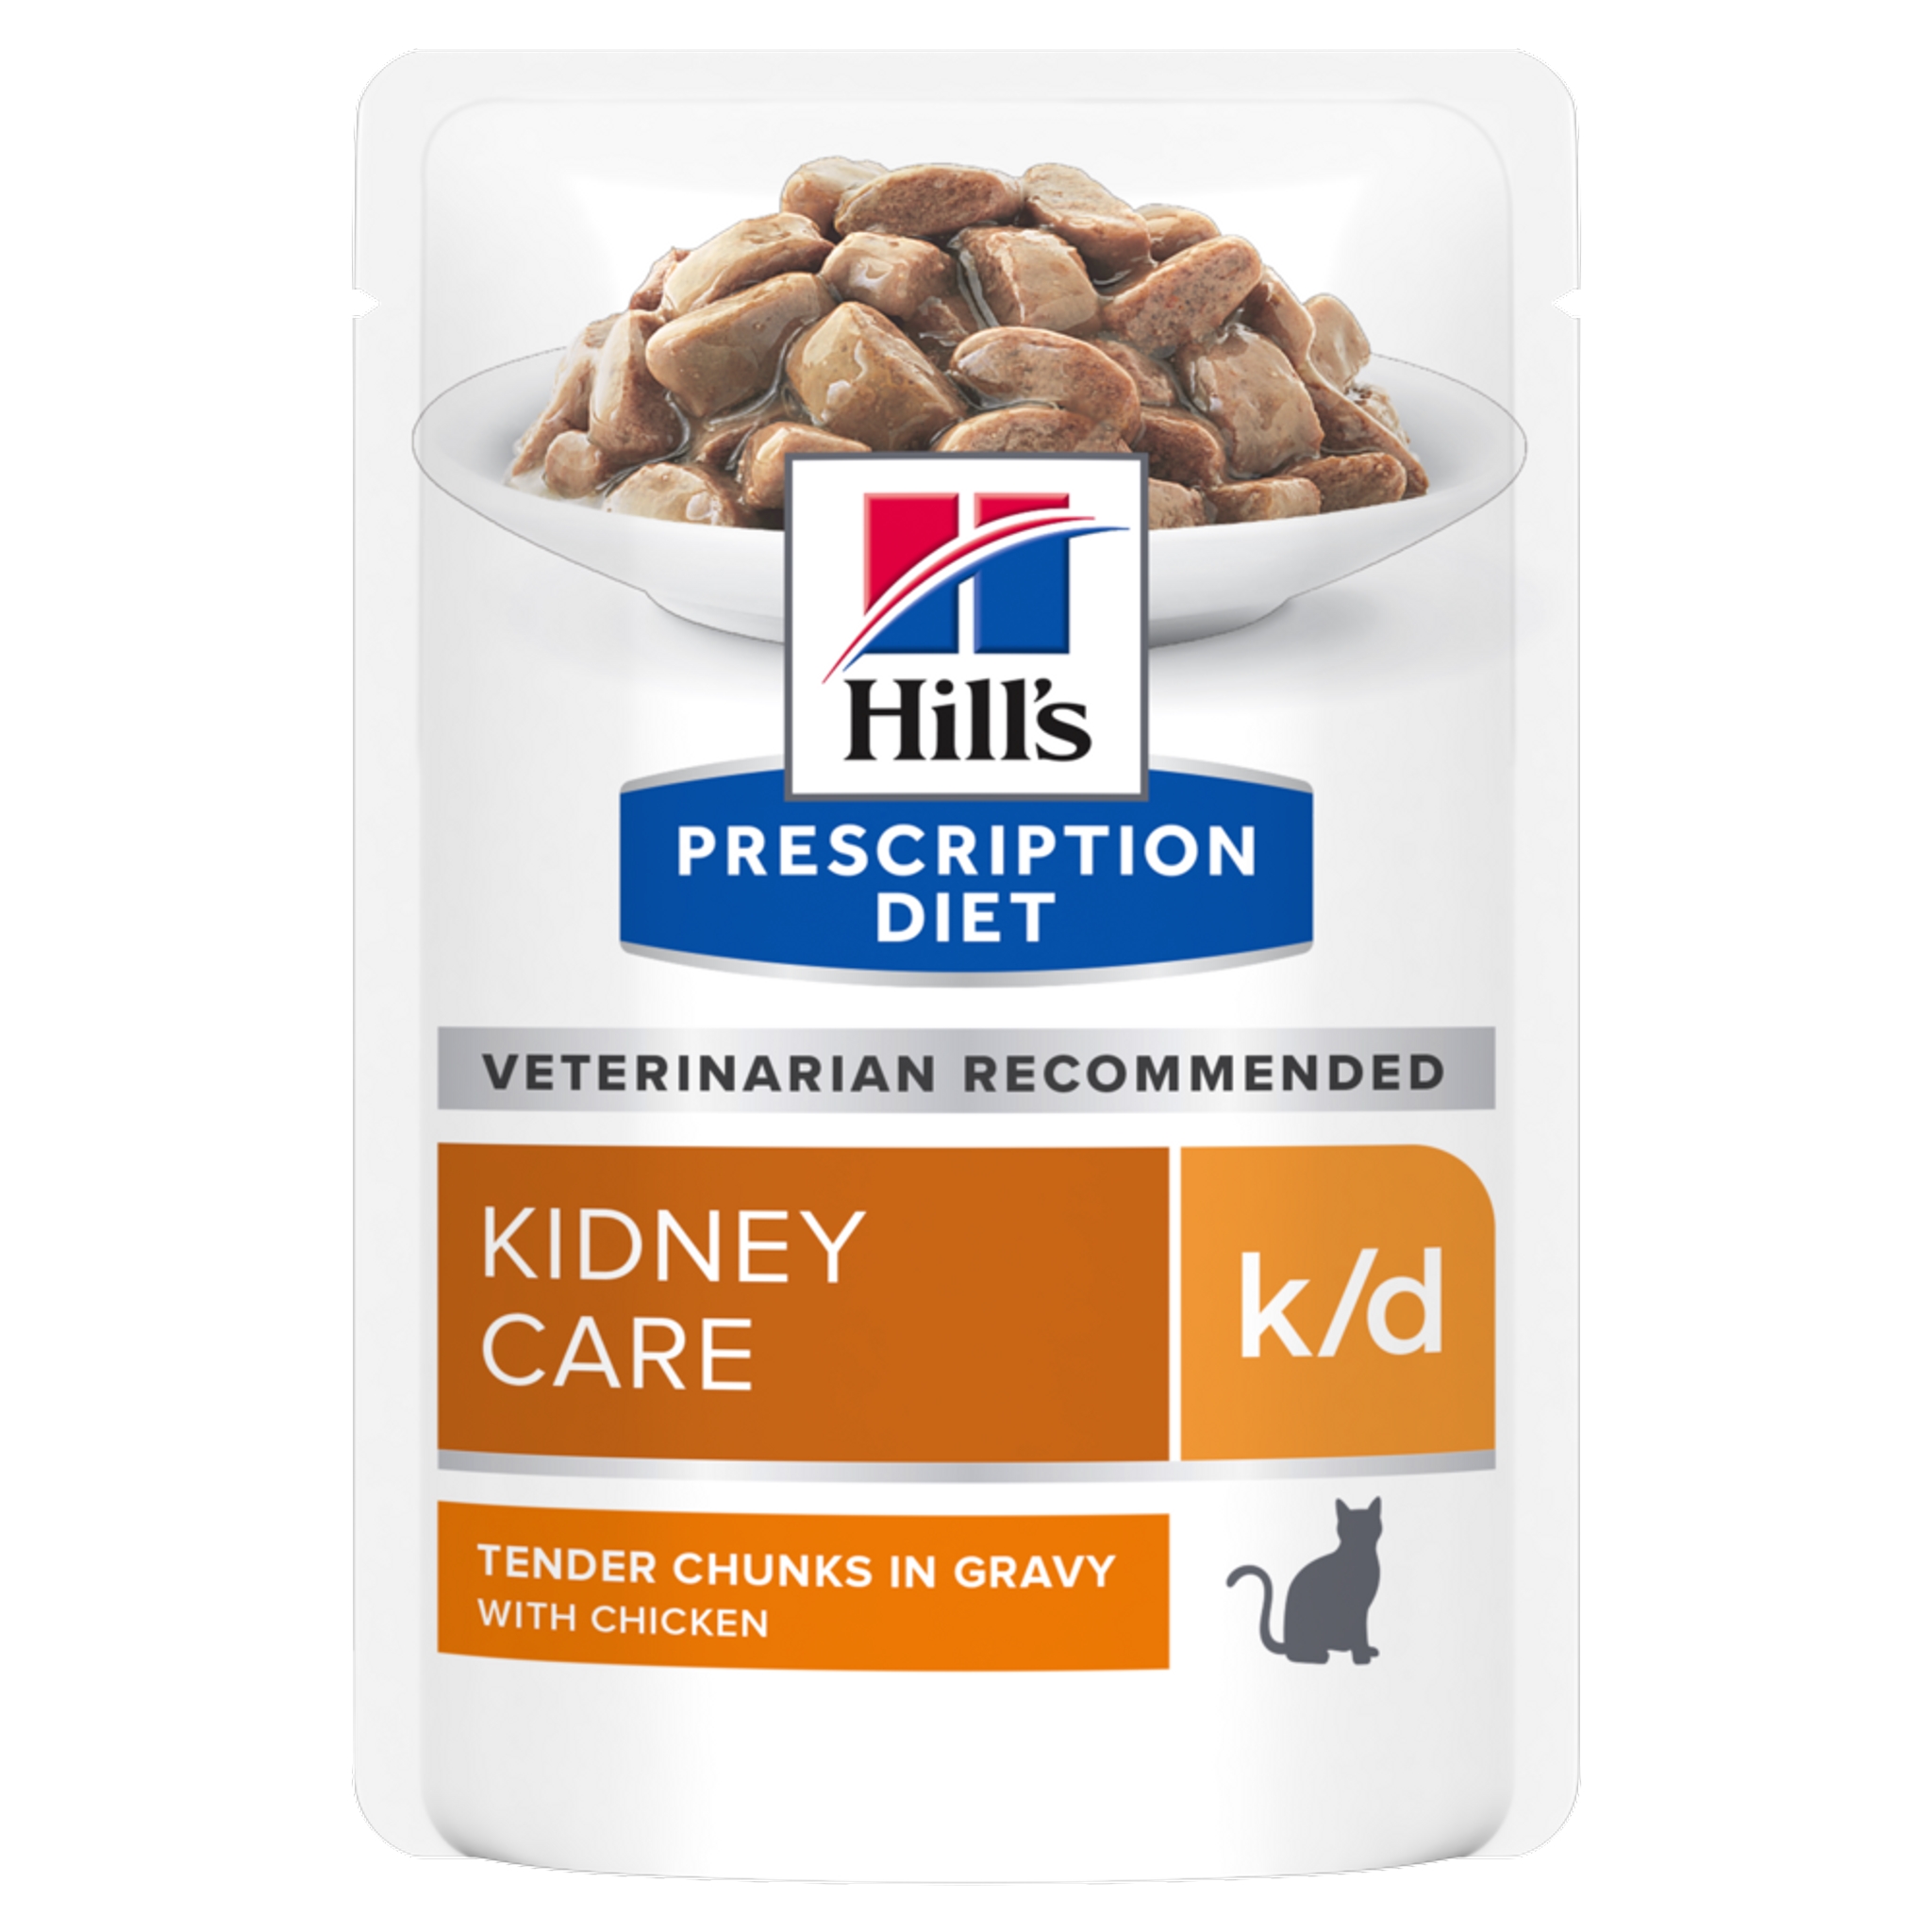 פאוצ' מזון k/d | Hill's Prescription Diet לחתול בוגר (עם עוף), 85 גר' (12 יח')